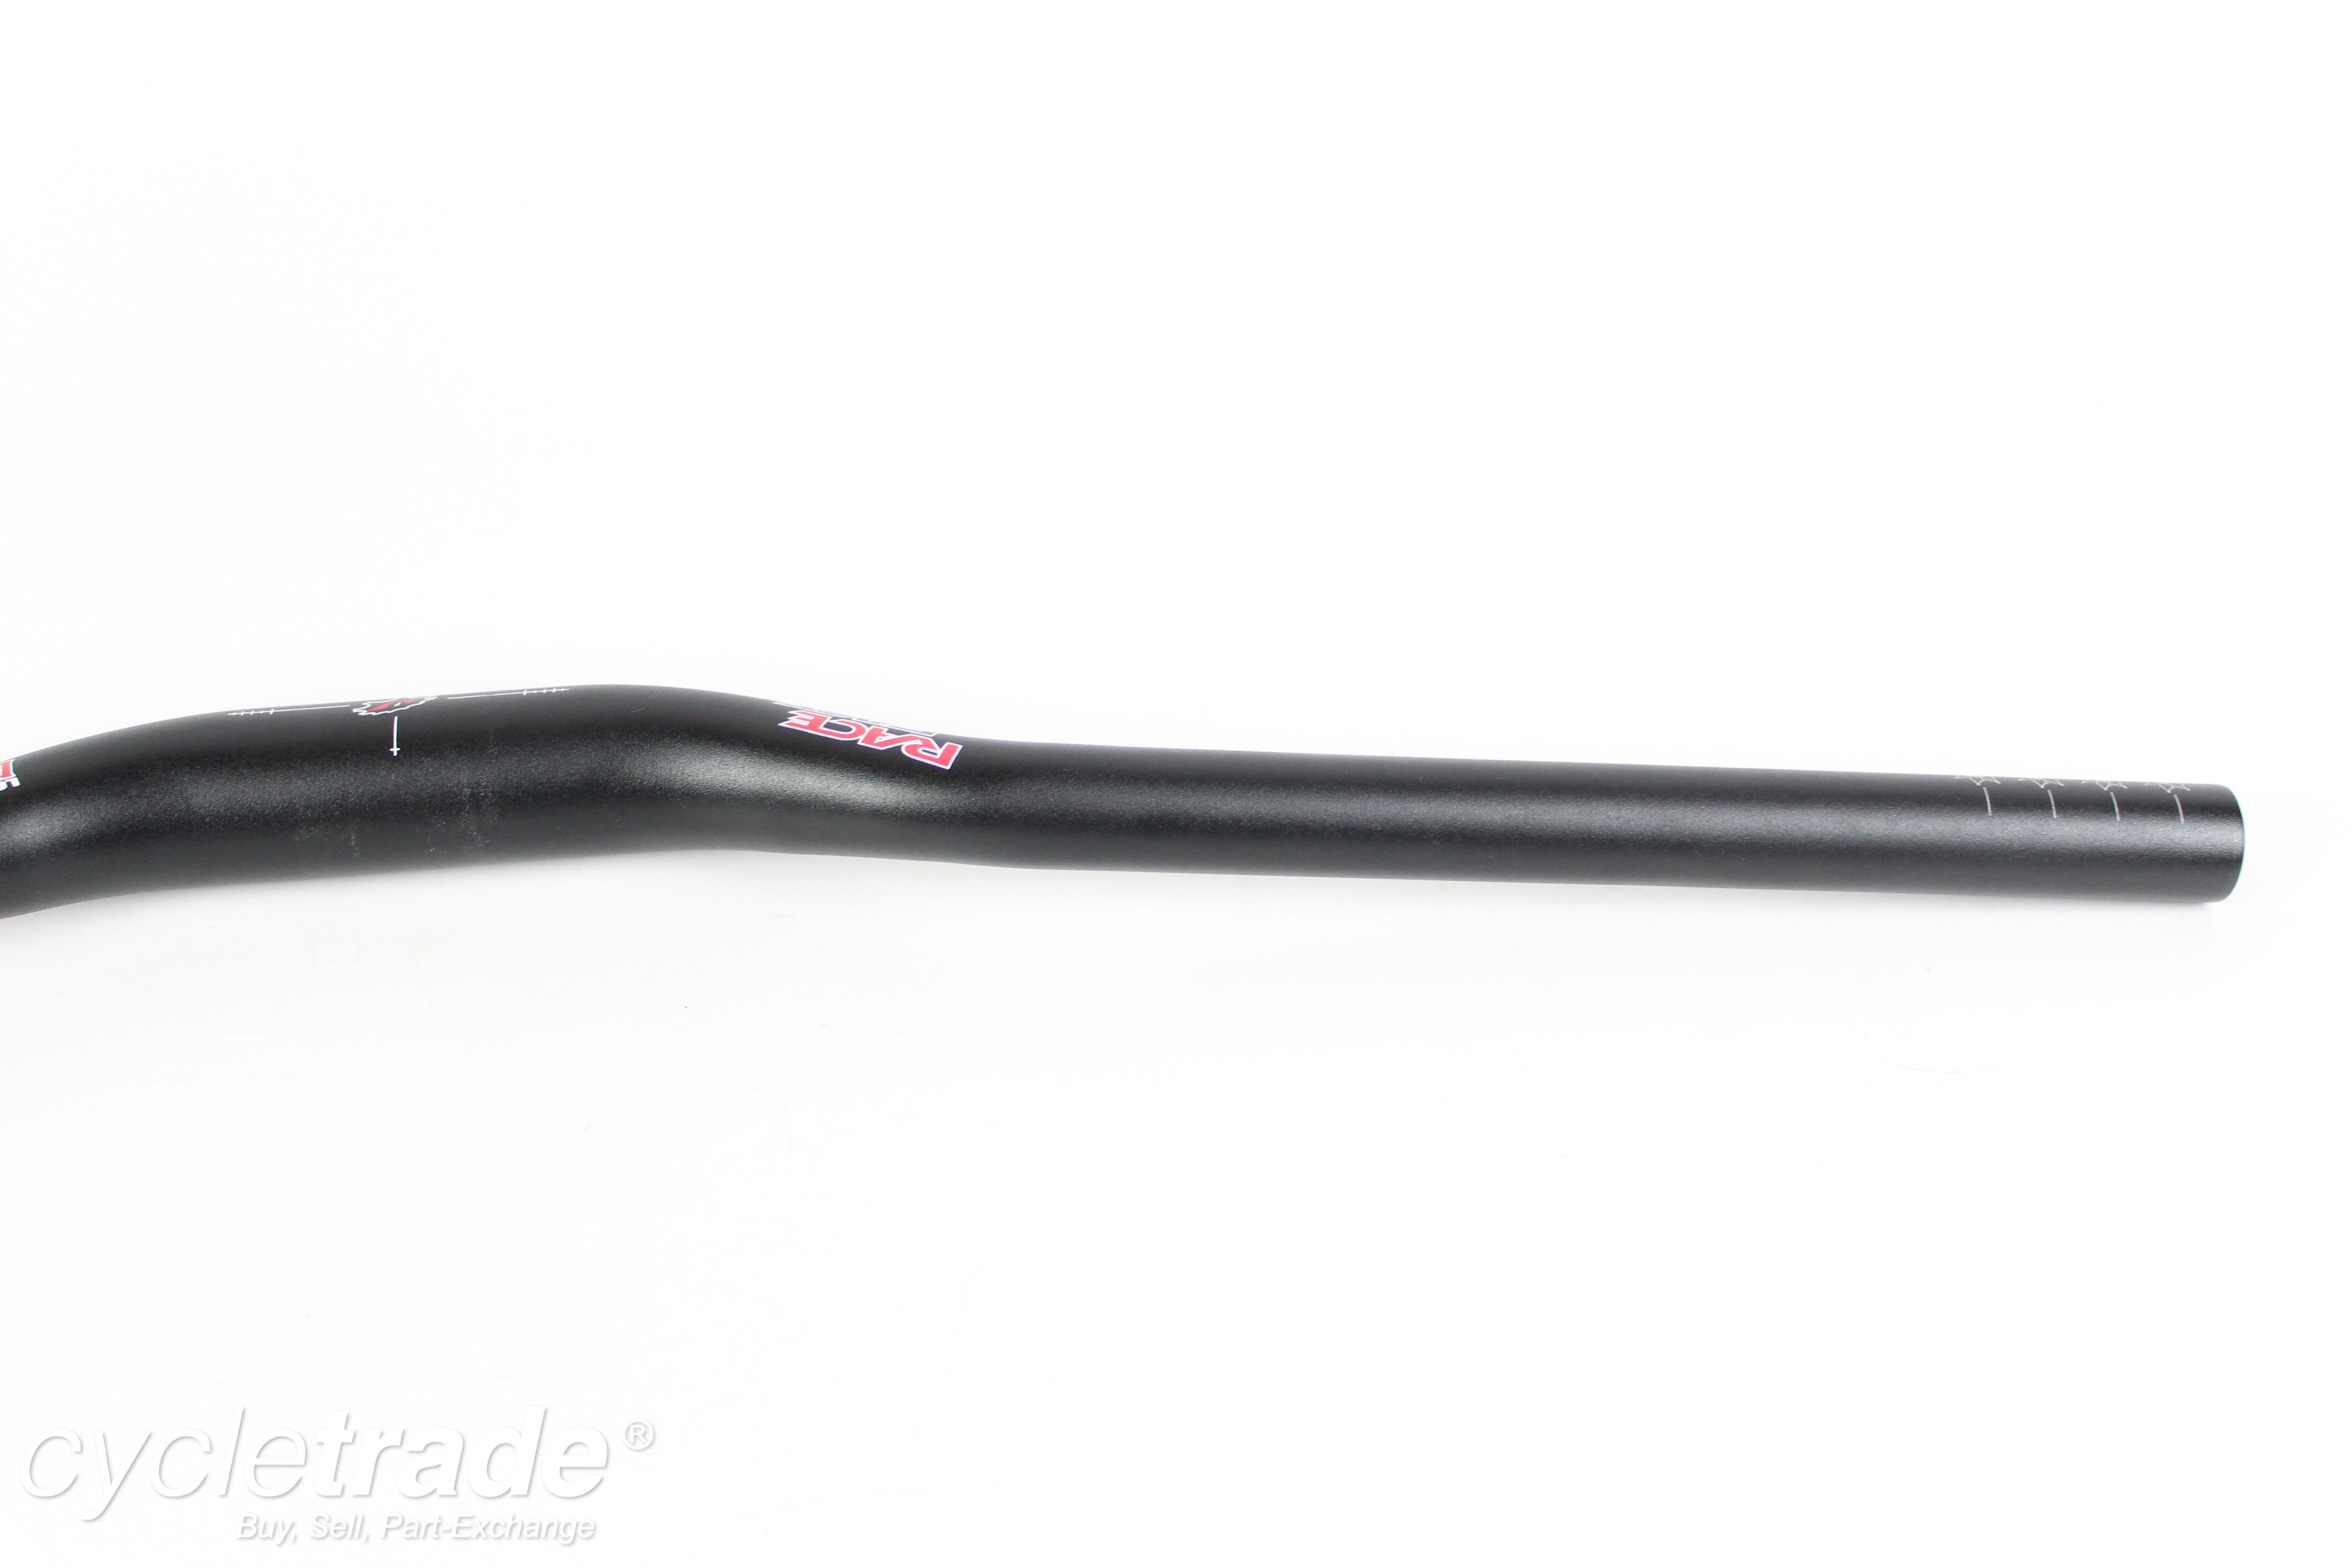 Riser handlebar - Race Face Deus XC Low Riser, 660mm, 40mm rise, 31.8mm - Grade A